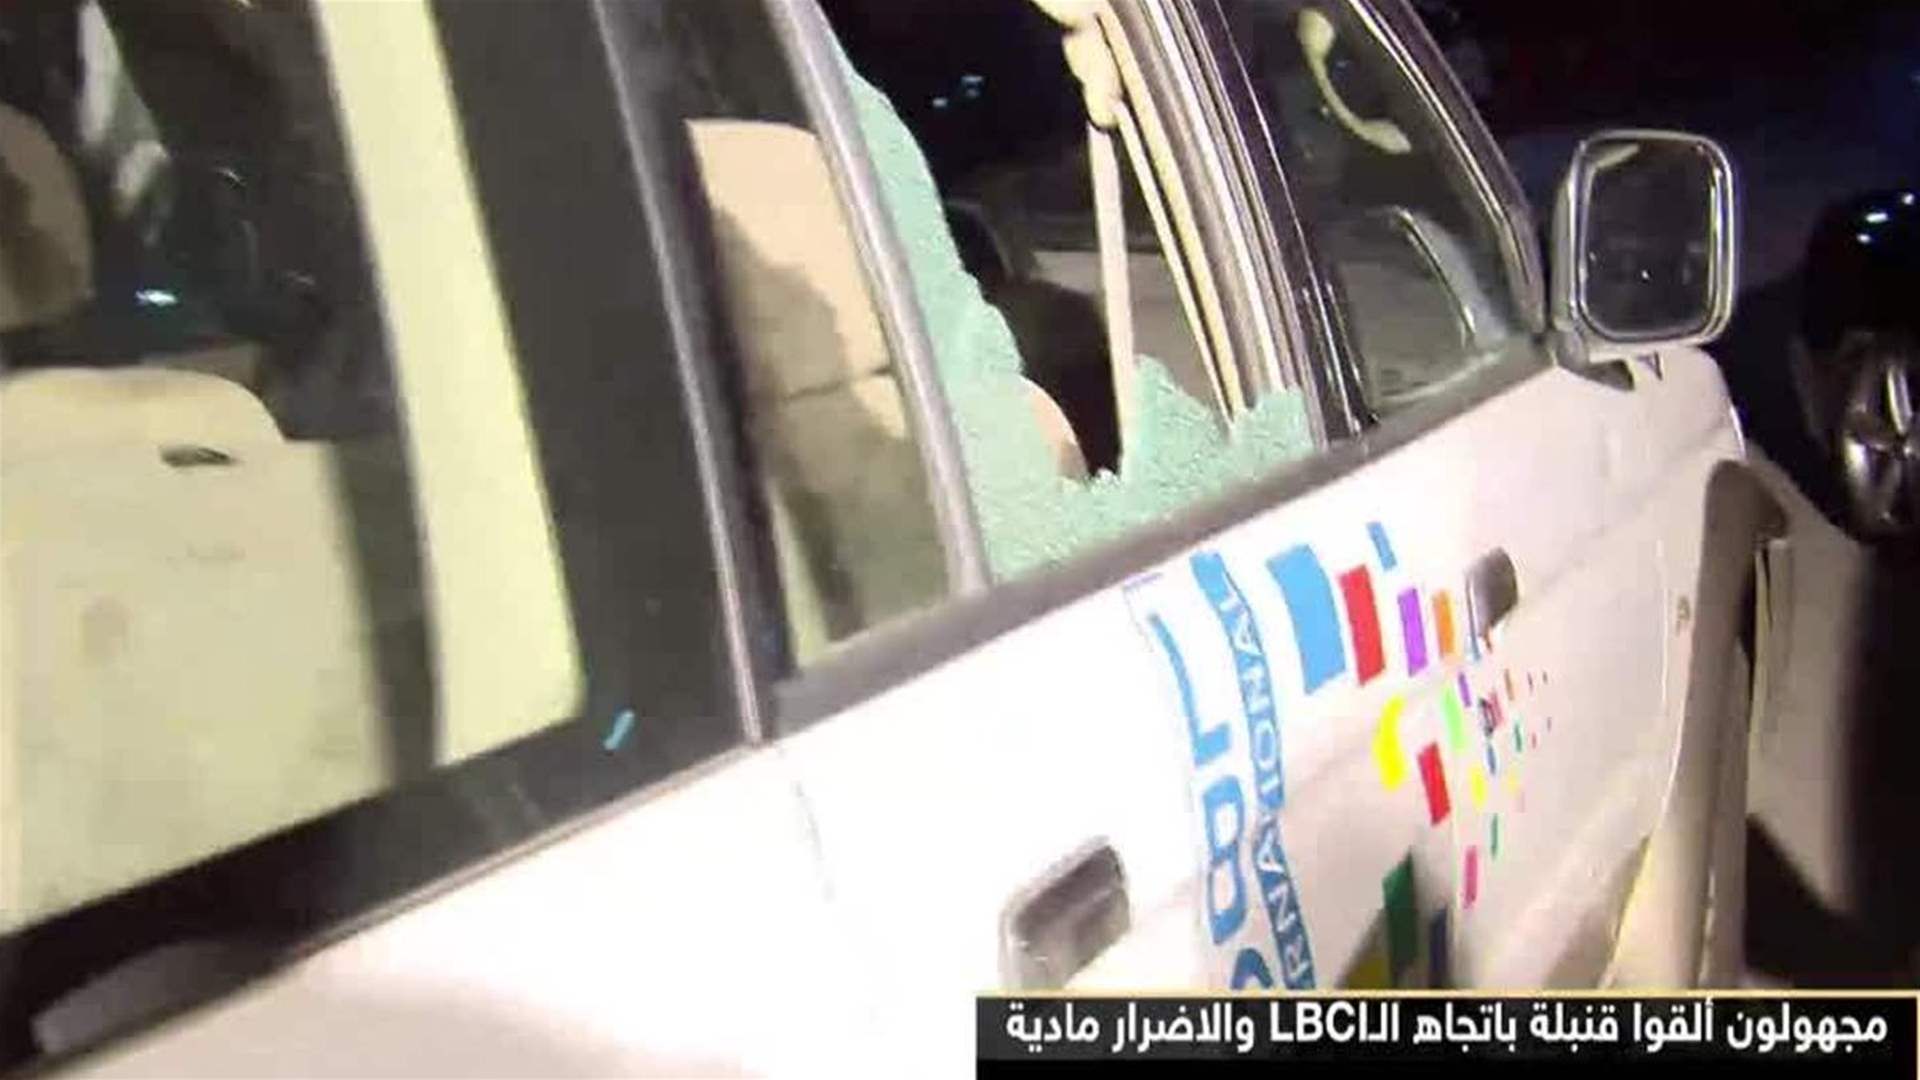 الـ LBCI بعد حادثة القاء قنبلة: سنكون كما كنا دوما منبرا للحرية والدفاع عن لبنان